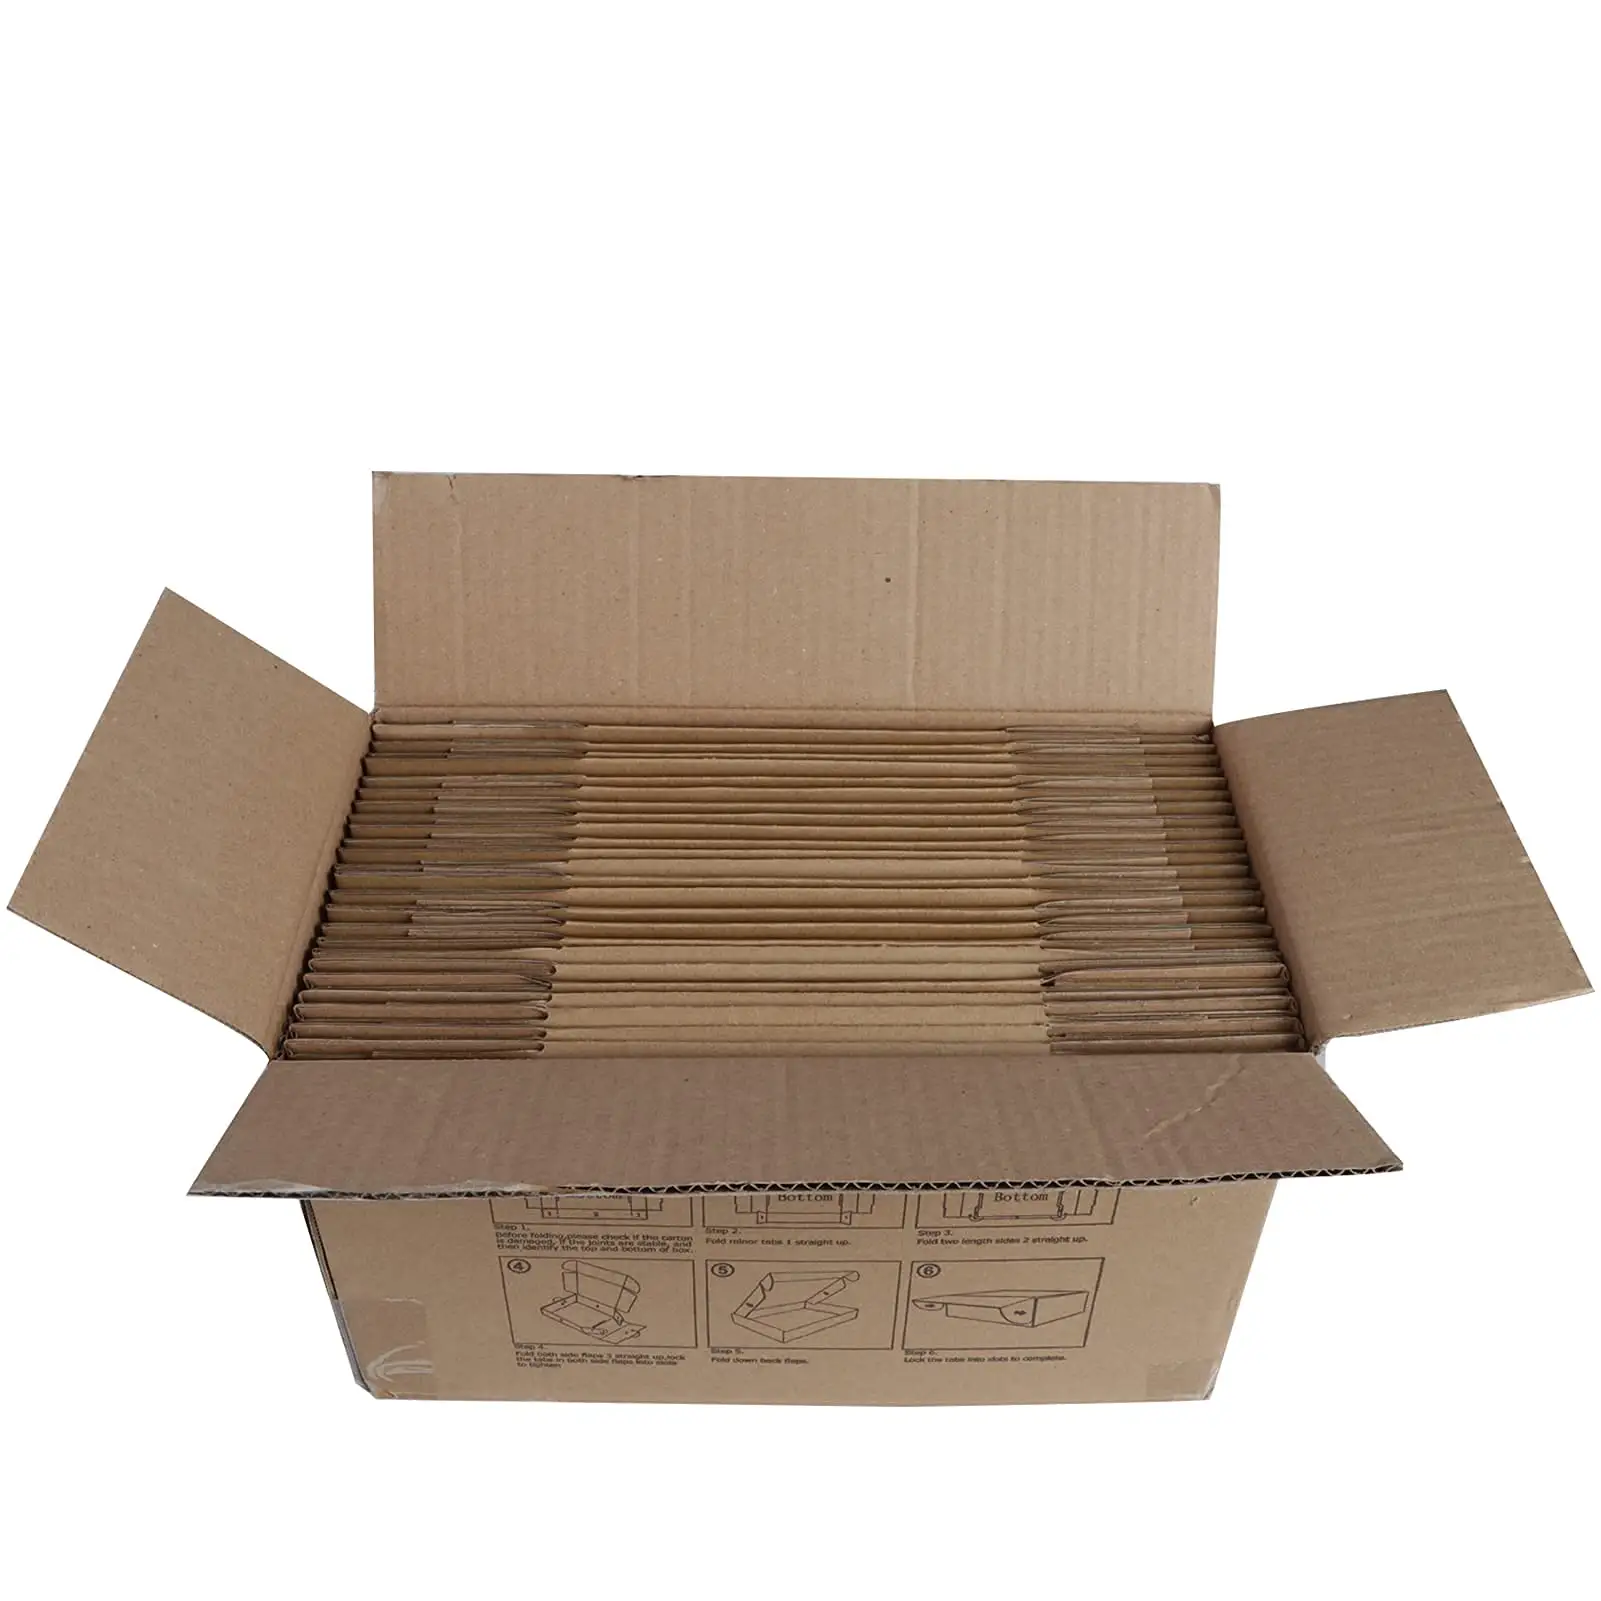 PHAREGE 9x6x2 дюймовые коробки для доставки 25 упаковок, коричневые маленькие гофрированные картонные почтовые ящики, почтовые ящики для упаковки маленькие